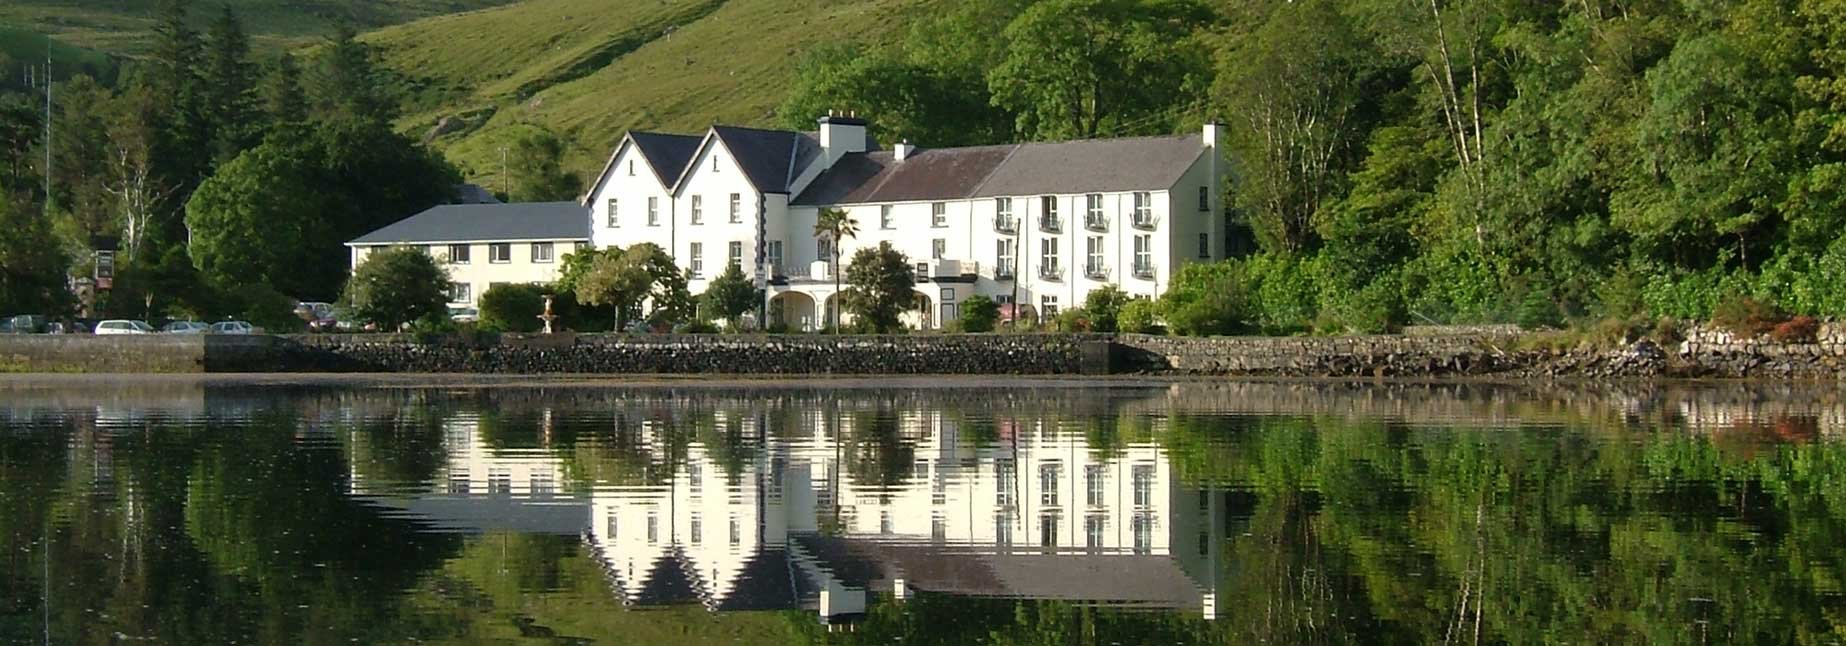 Leenane Hotel in Connemara, Ireland